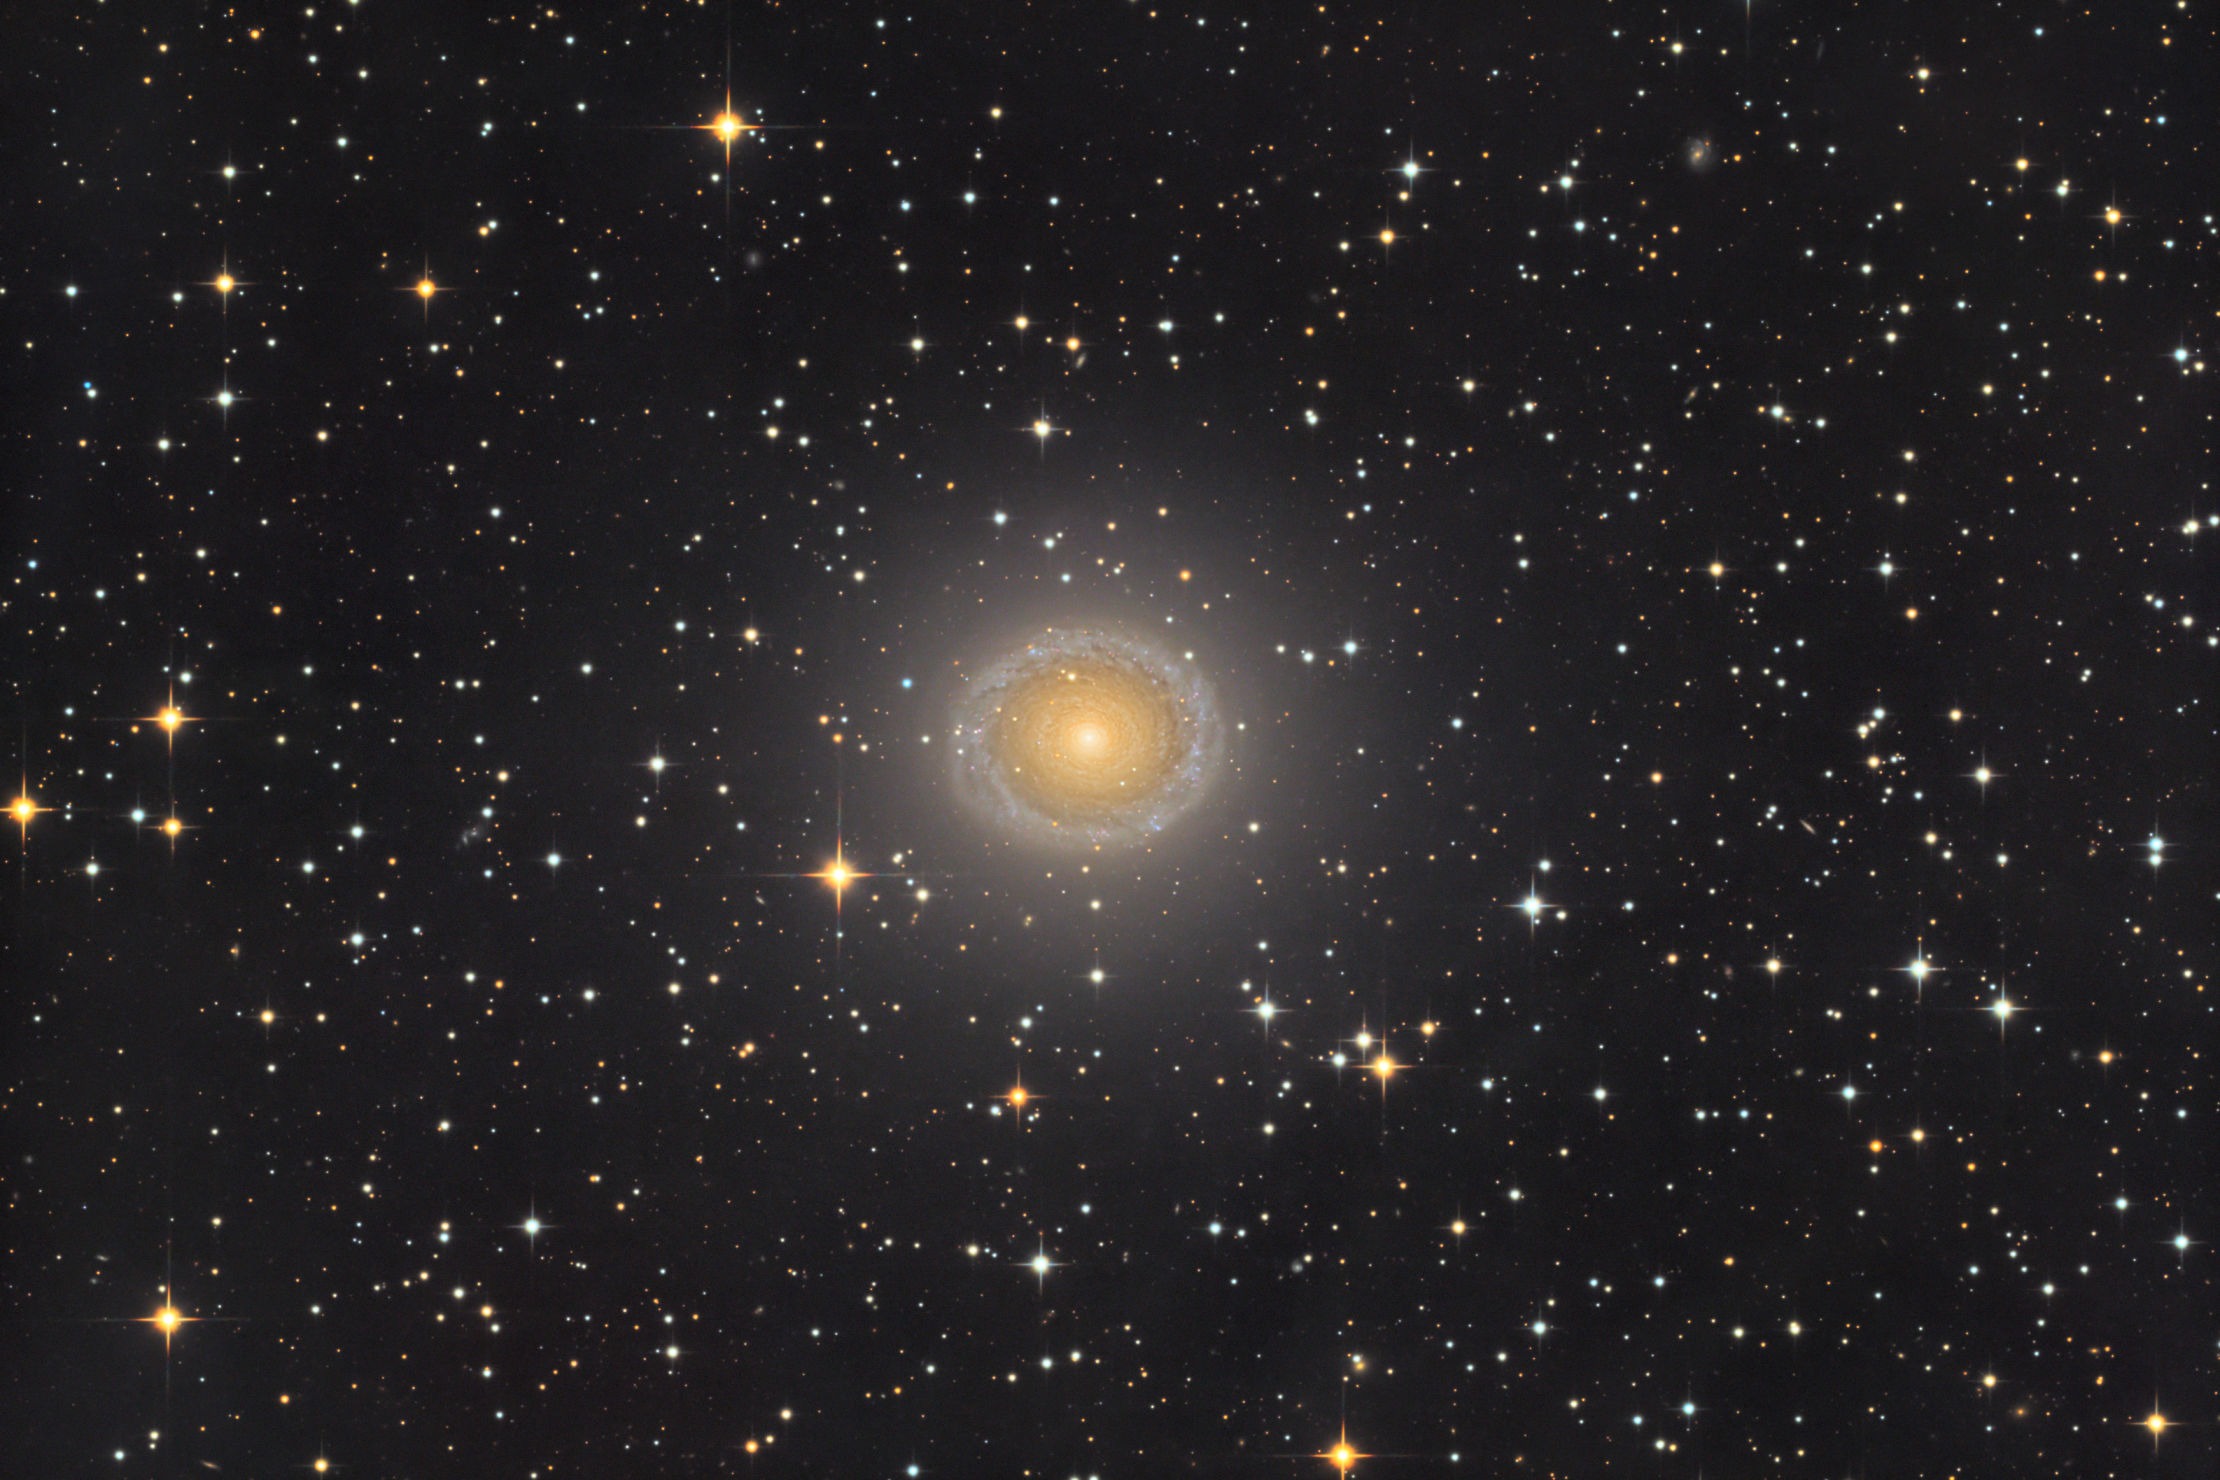 NGC 278